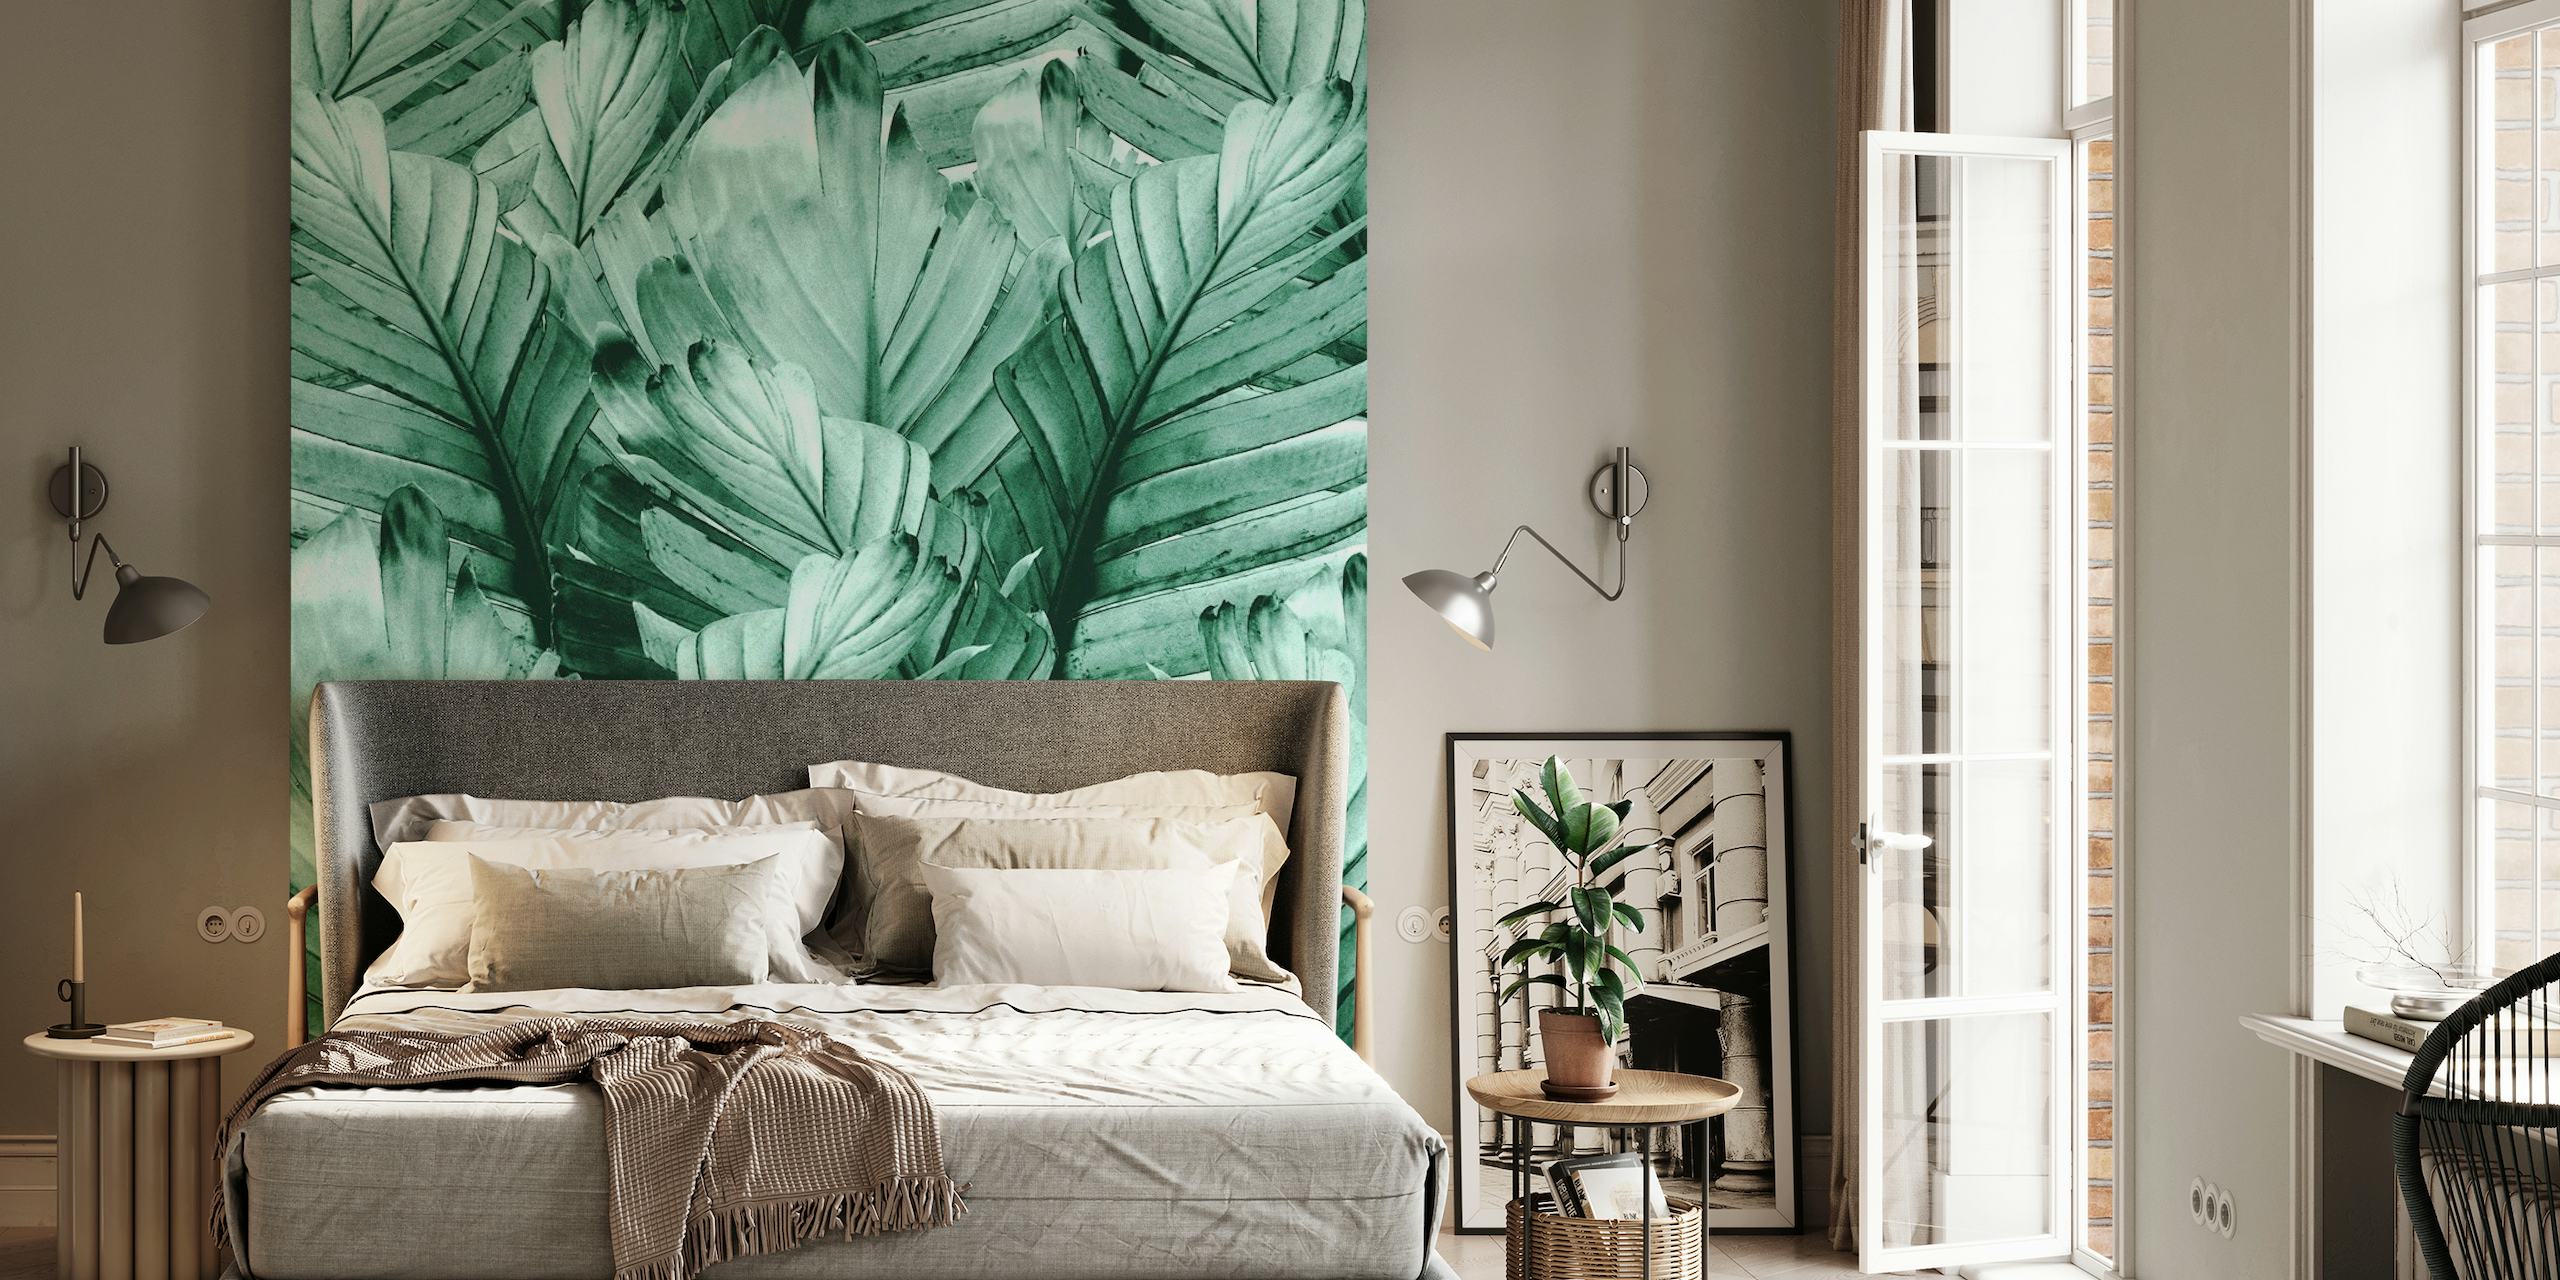 Fototapete mit grünen Bananenblättern und detaillierten Texturen im tropischen Stil